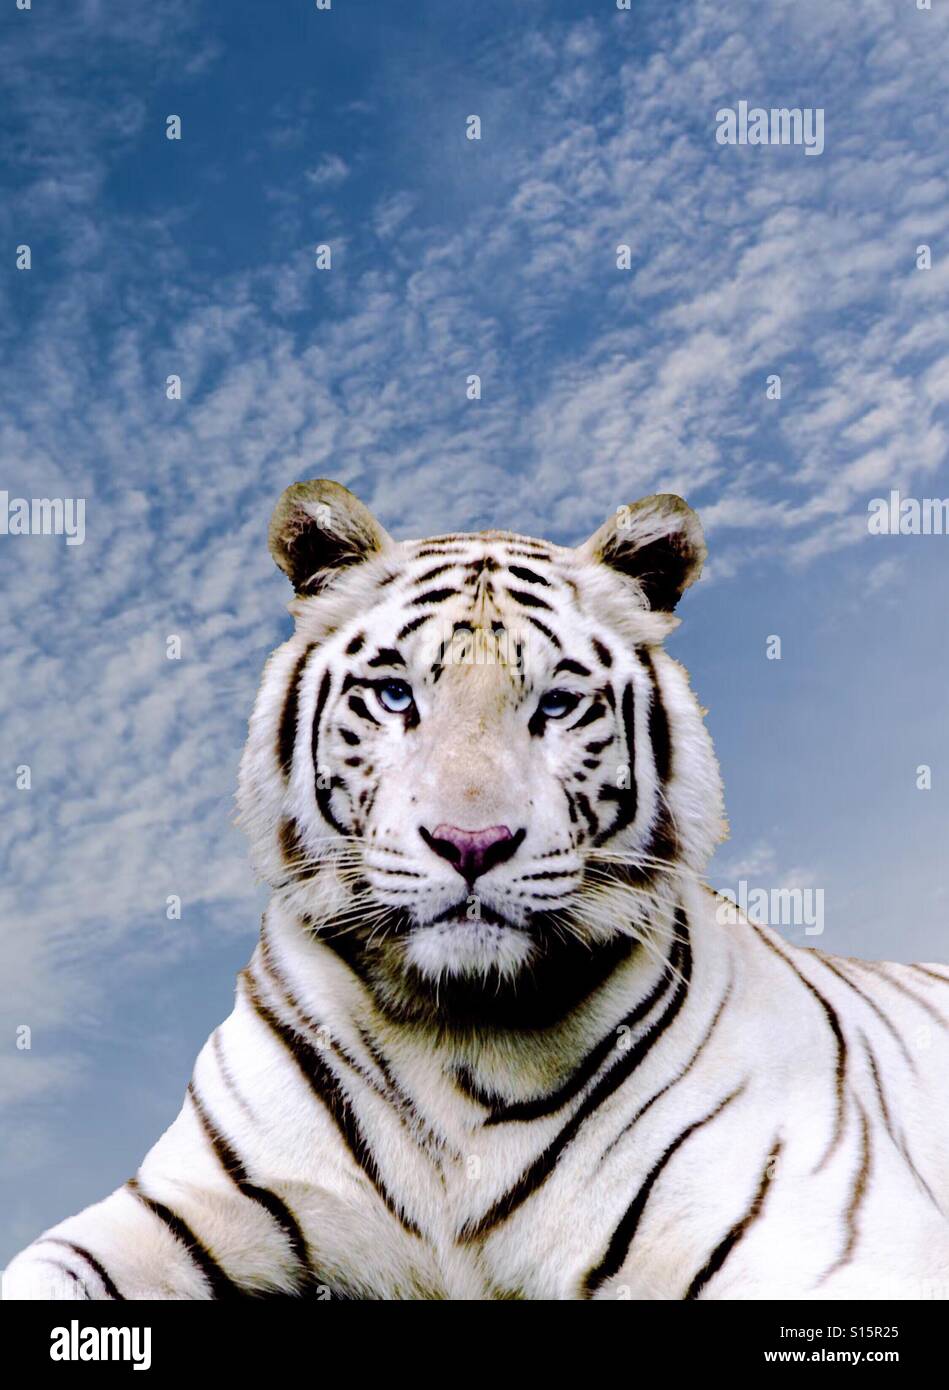 La imponente belleza de un tigre blanco, capturado en un momento cuando sus ojos se reunió el mío. Foto de stock